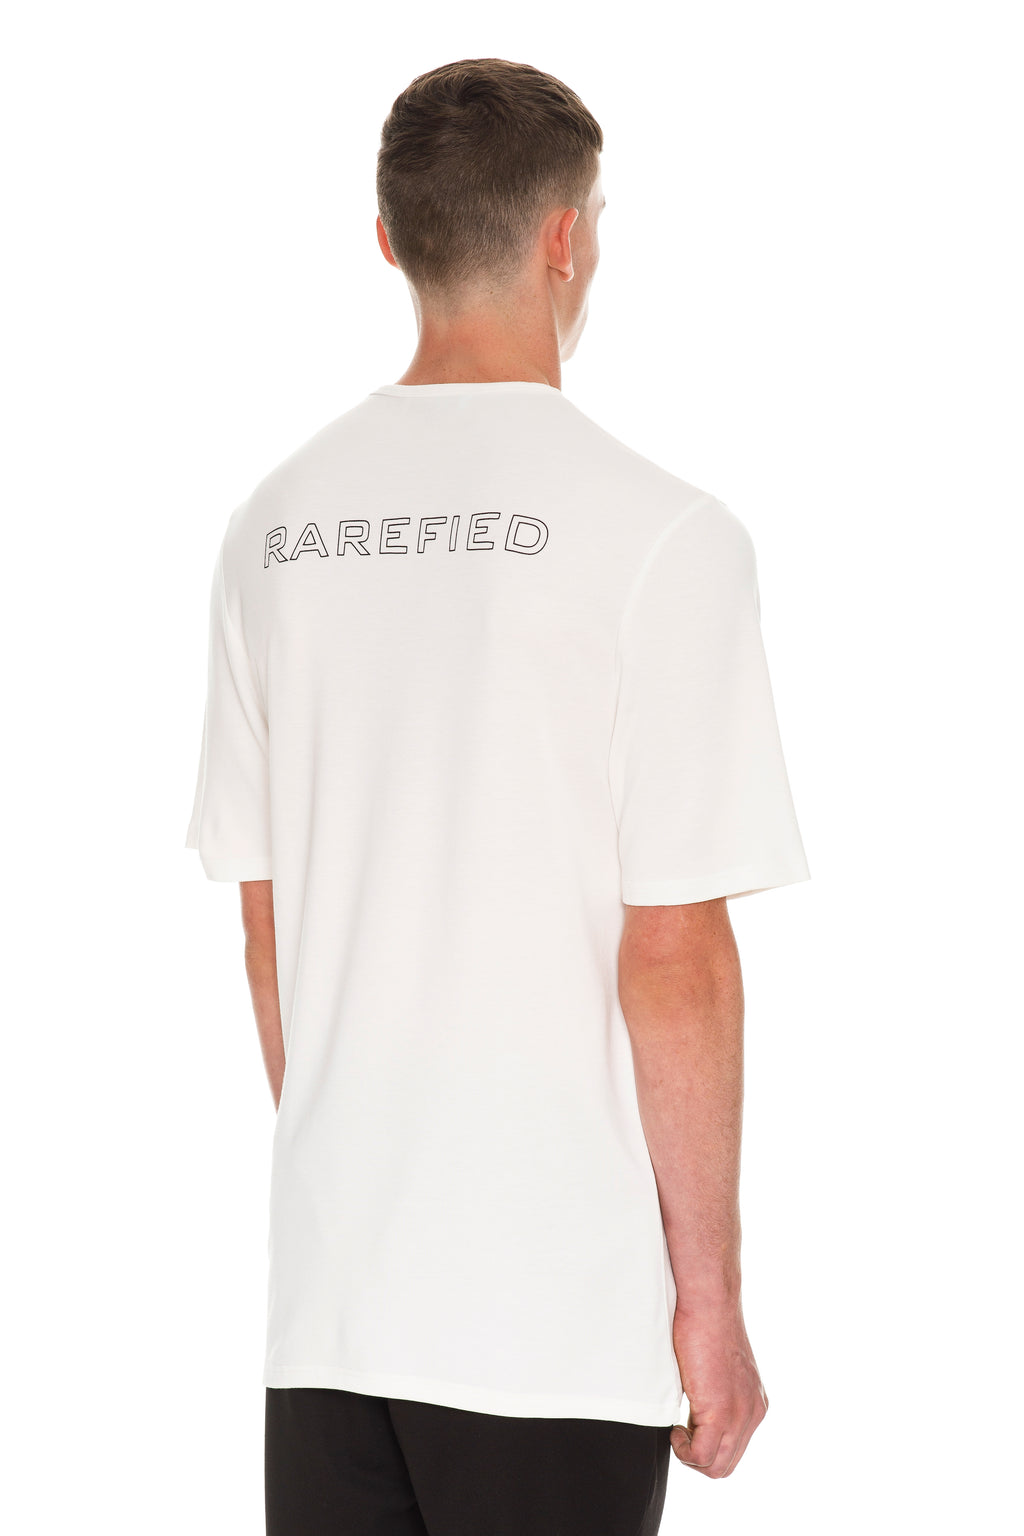 Rarefied T-Shirt - White